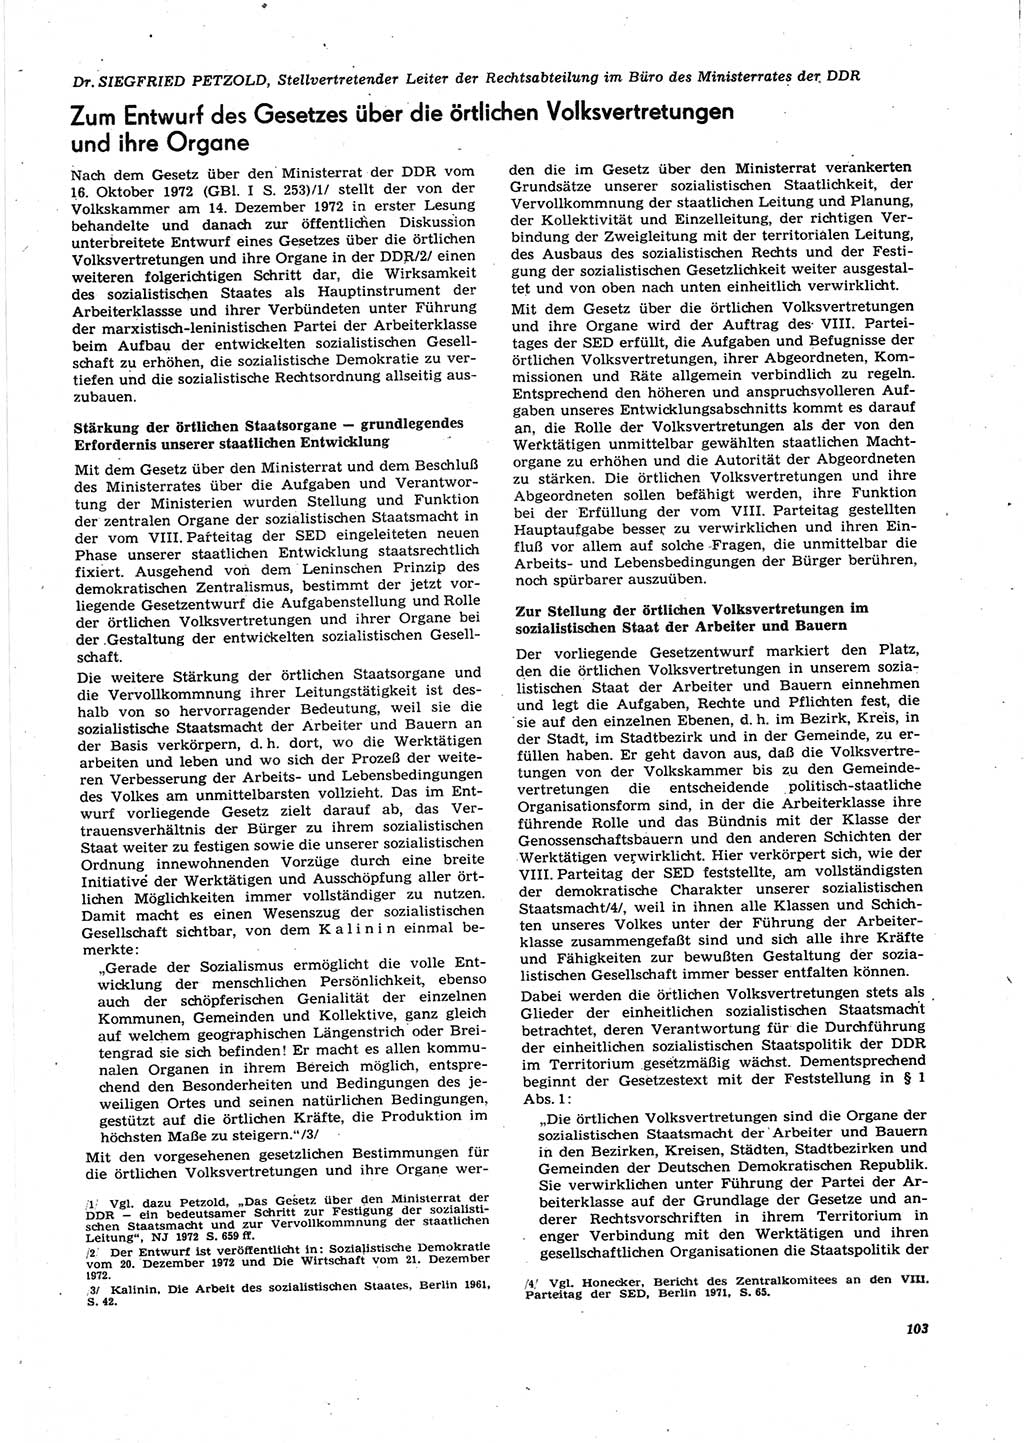 Neue Justiz (NJ), Zeitschrift für Recht und Rechtswissenschaft [Deutsche Demokratische Republik (DDR)], 27. Jahrgang 1973, Seite 103 (NJ DDR 1973, S. 103)